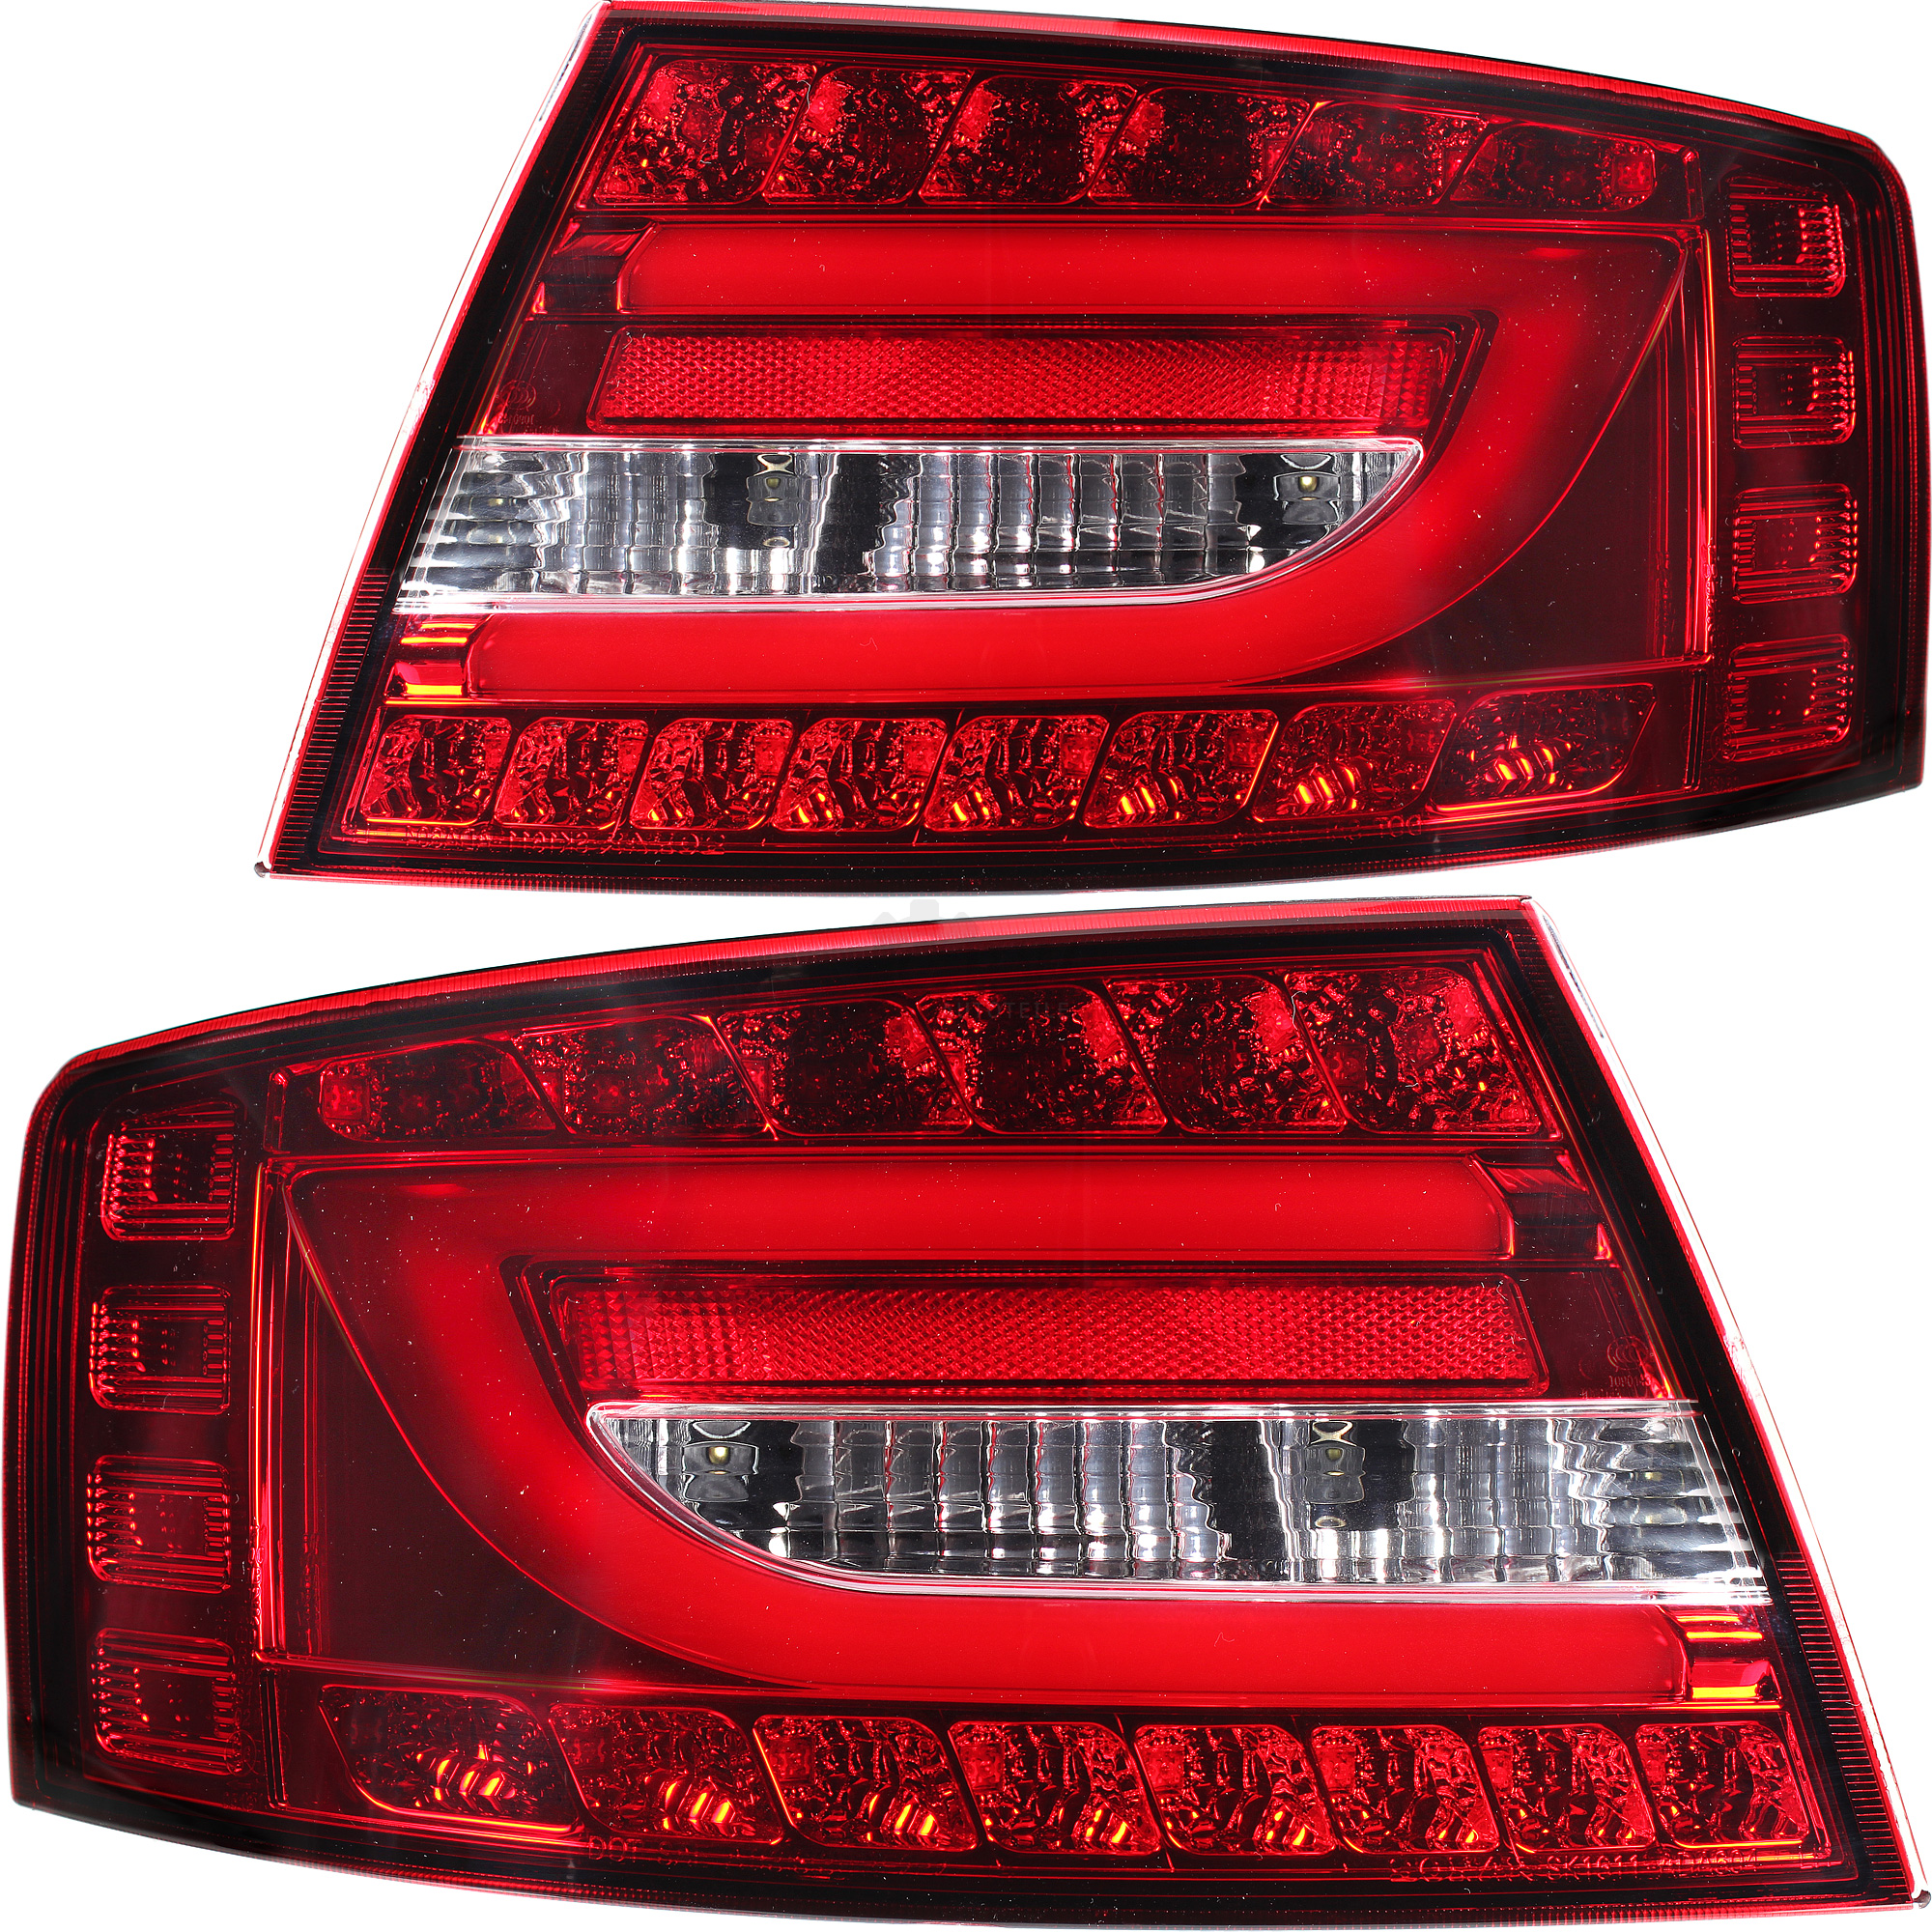 Rückleuchten Set LED Lightbar für Audi A6 4F Limo Bj 04-08 rot chrom weiß 7 Pin